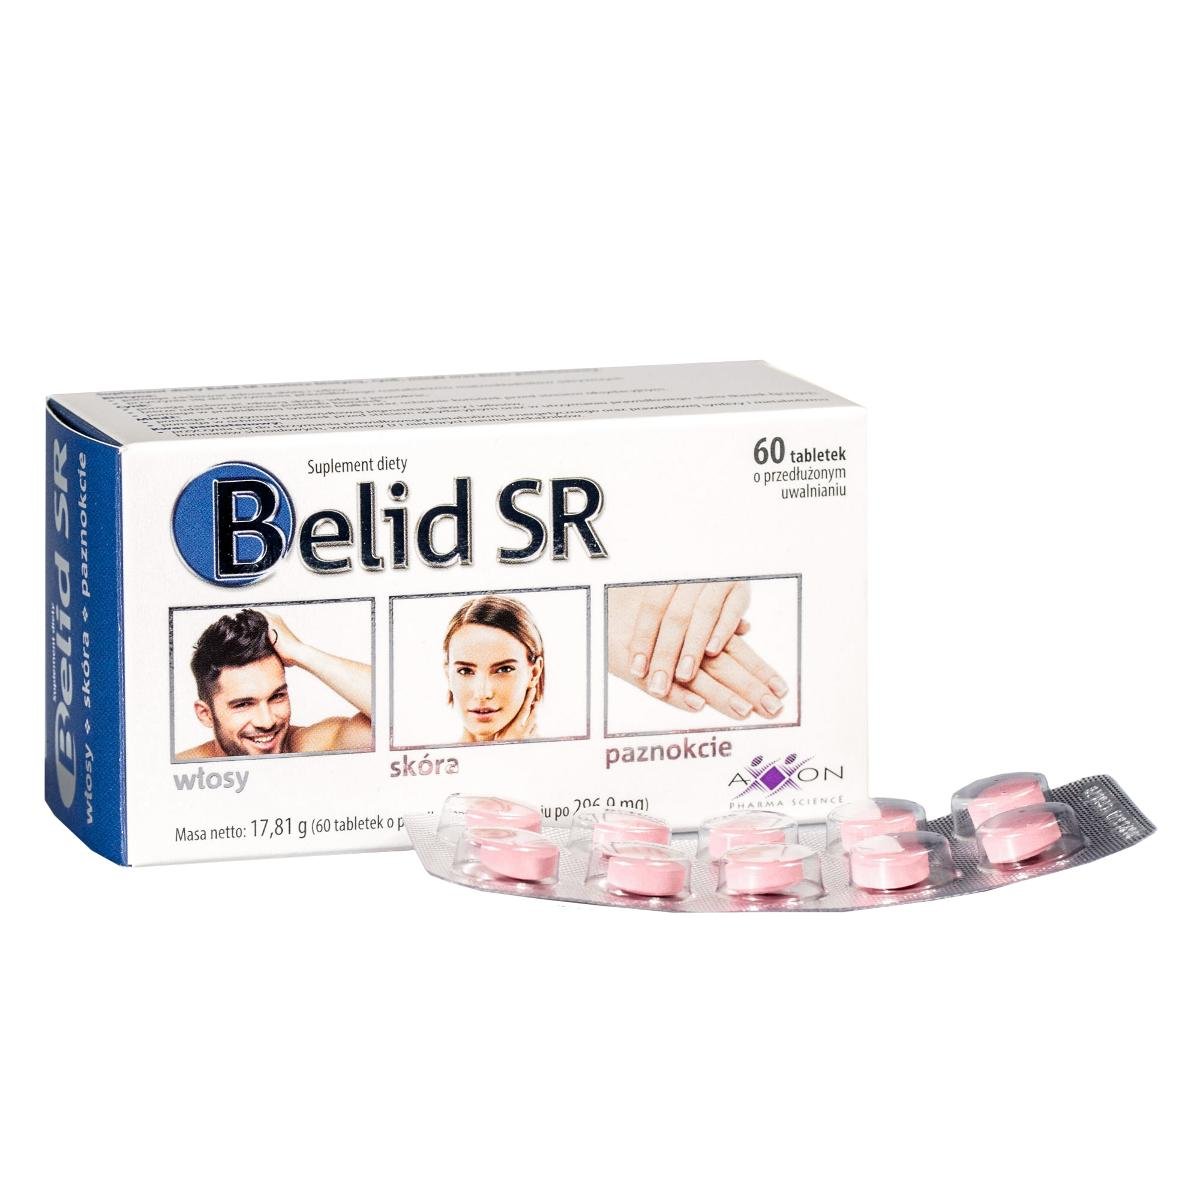 Axxon Belid SR włosy skóra paznokcie 60 tabletek 3240961